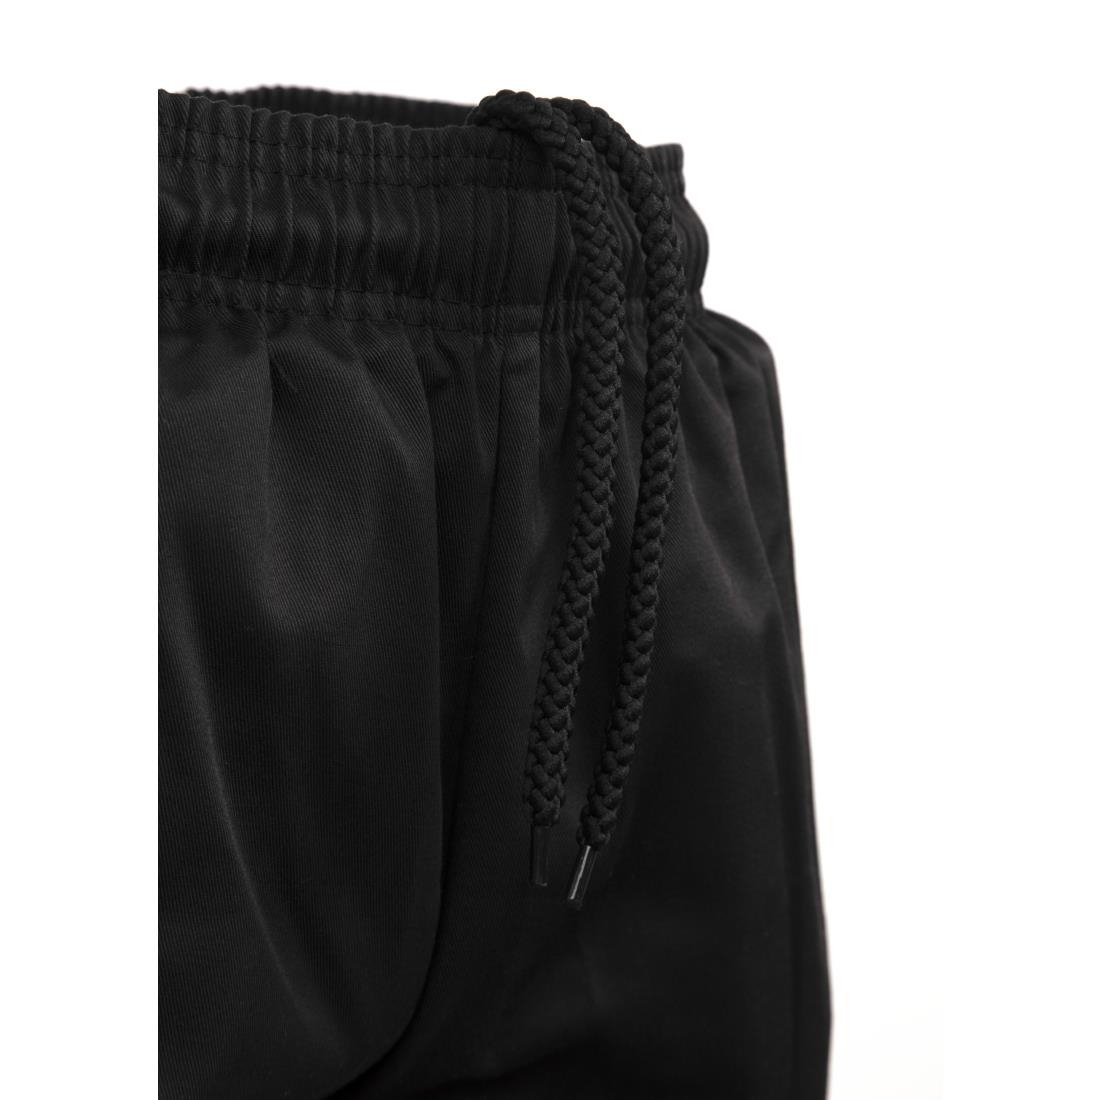 Pantalon cargo Whites noir S